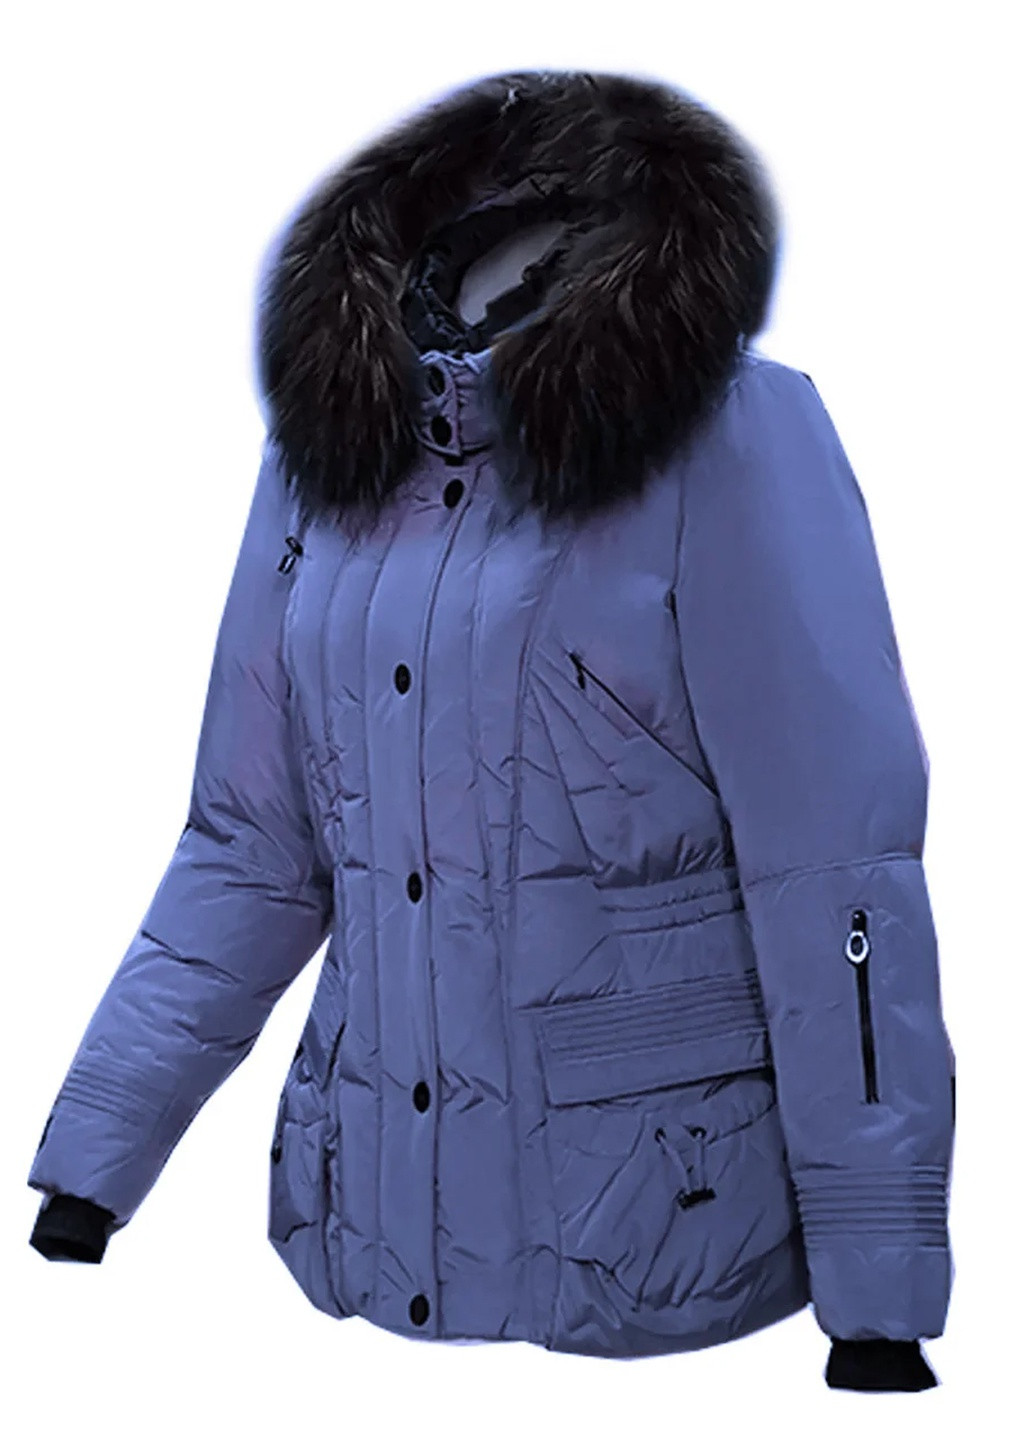 Синяя зимняя куртка на натуральном пуху с капюшоном с мехом енота Mirage